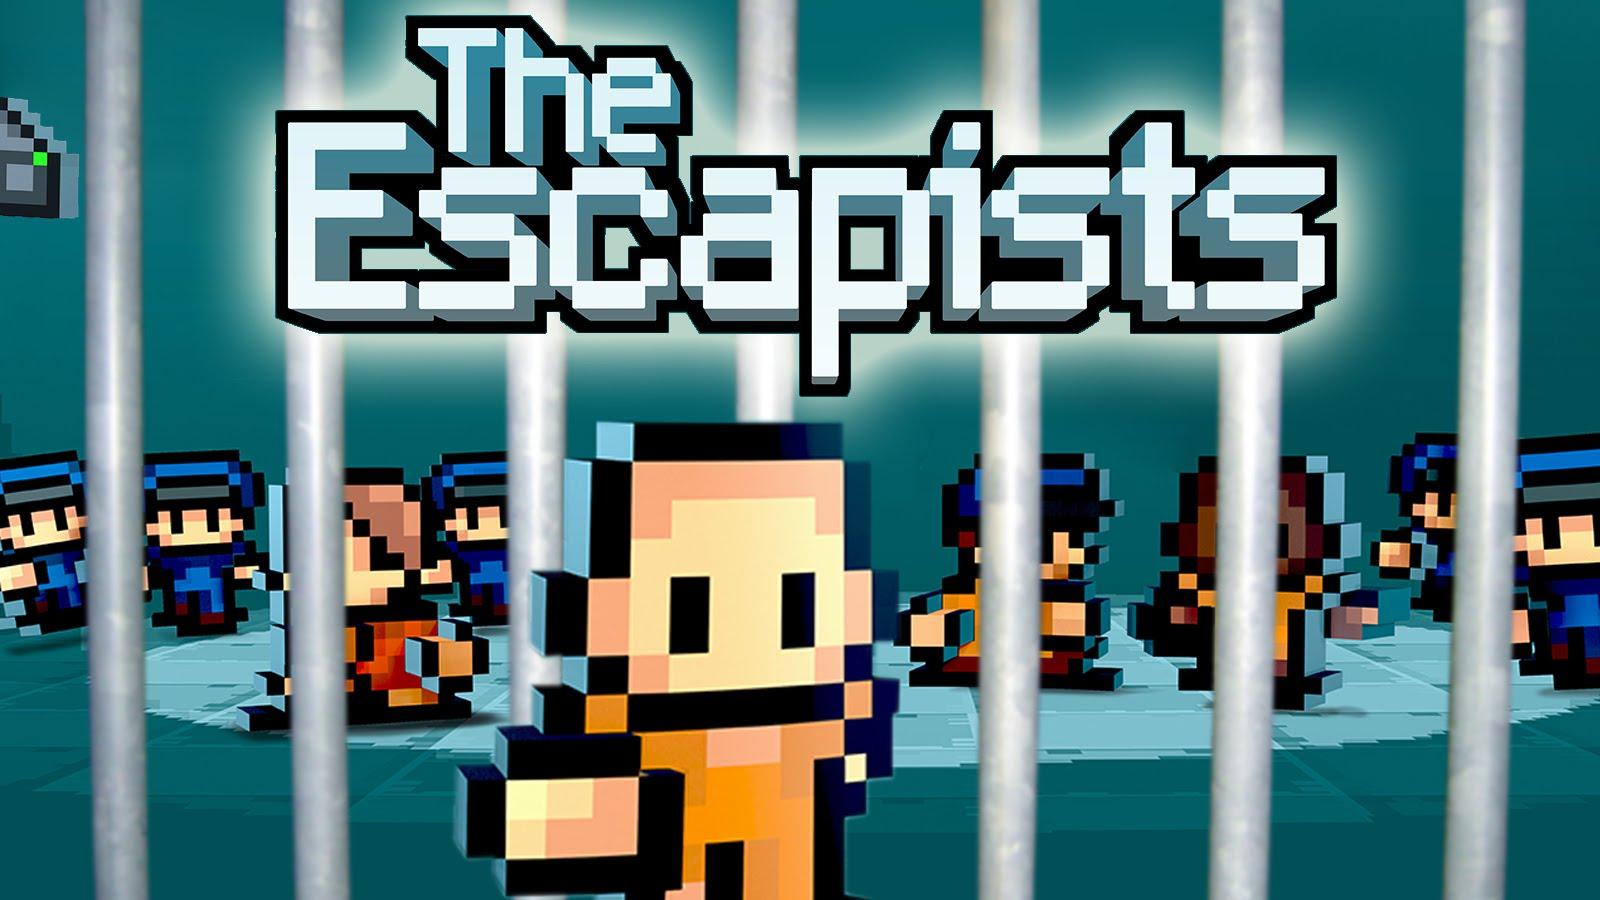 download the escapist 2 prison for free